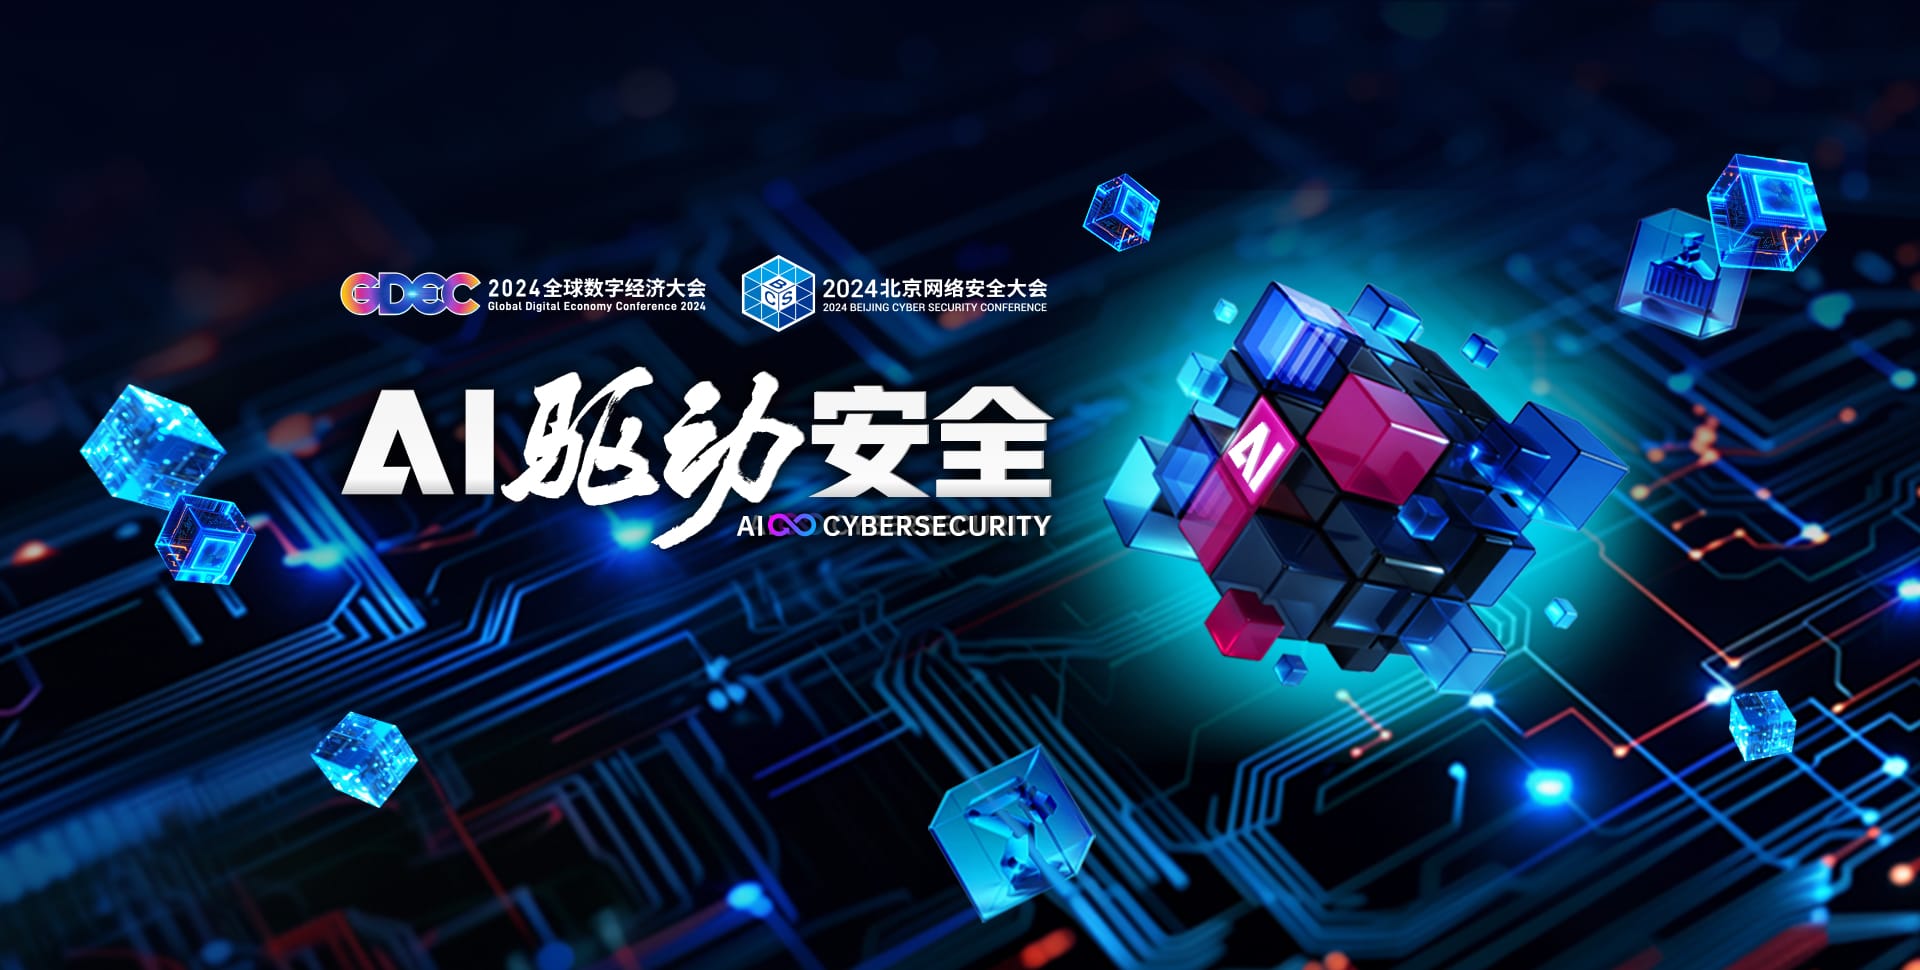 第六届北京网络安全大会BCS 2024将于6月5日召开 大会主题“AI驱动安全”